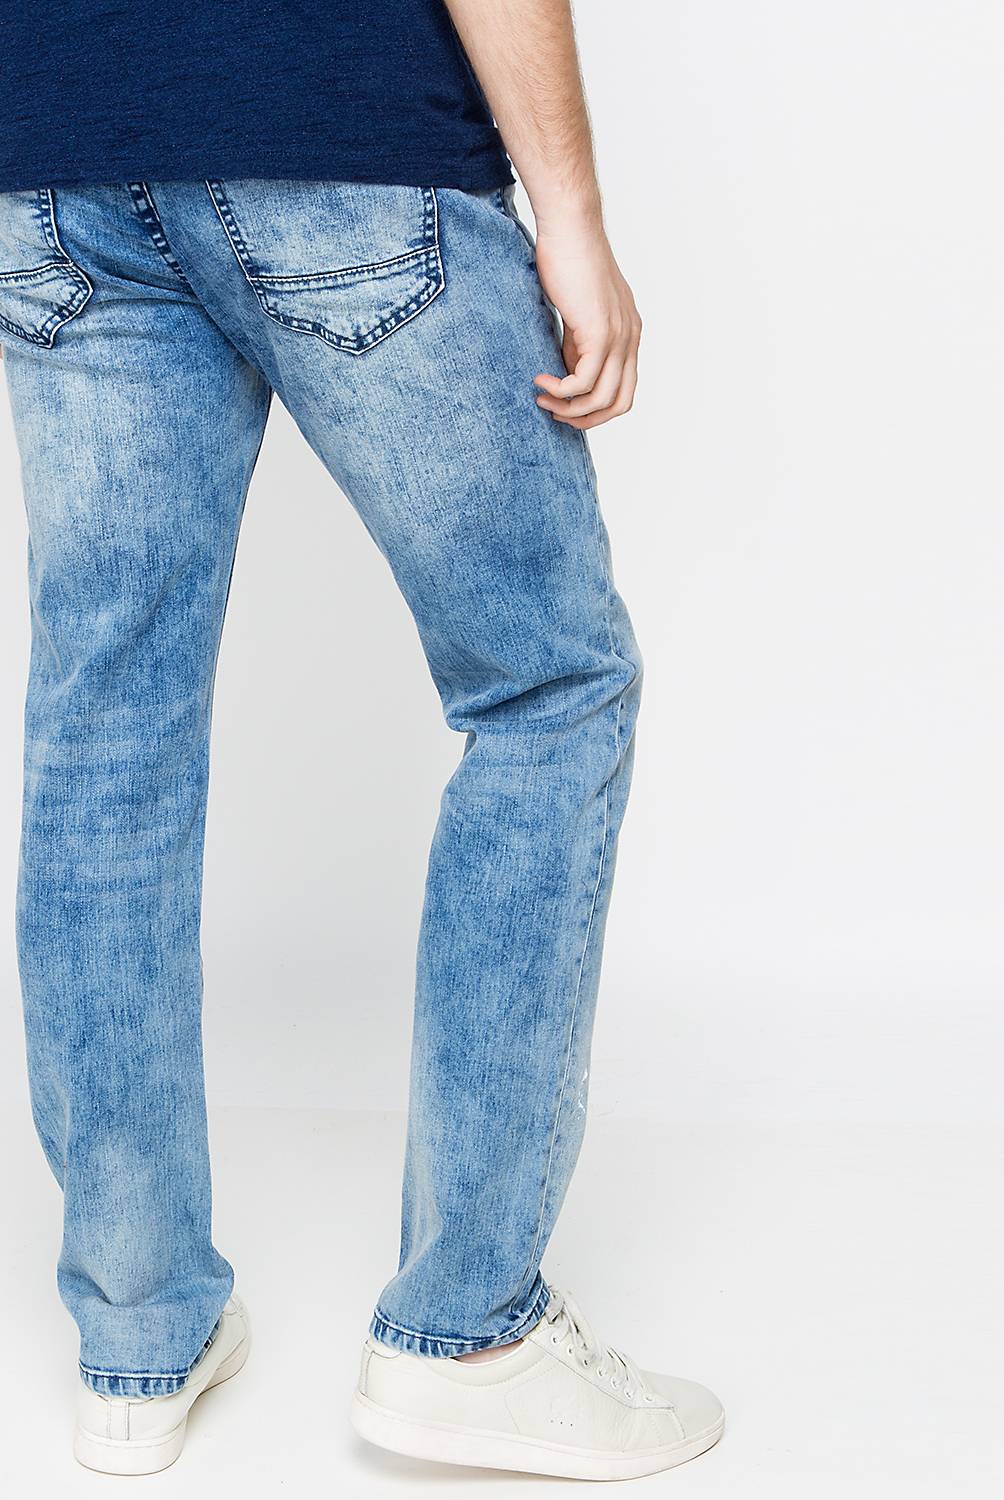 MOSSIMO - Pantalón Jeans Hombre 